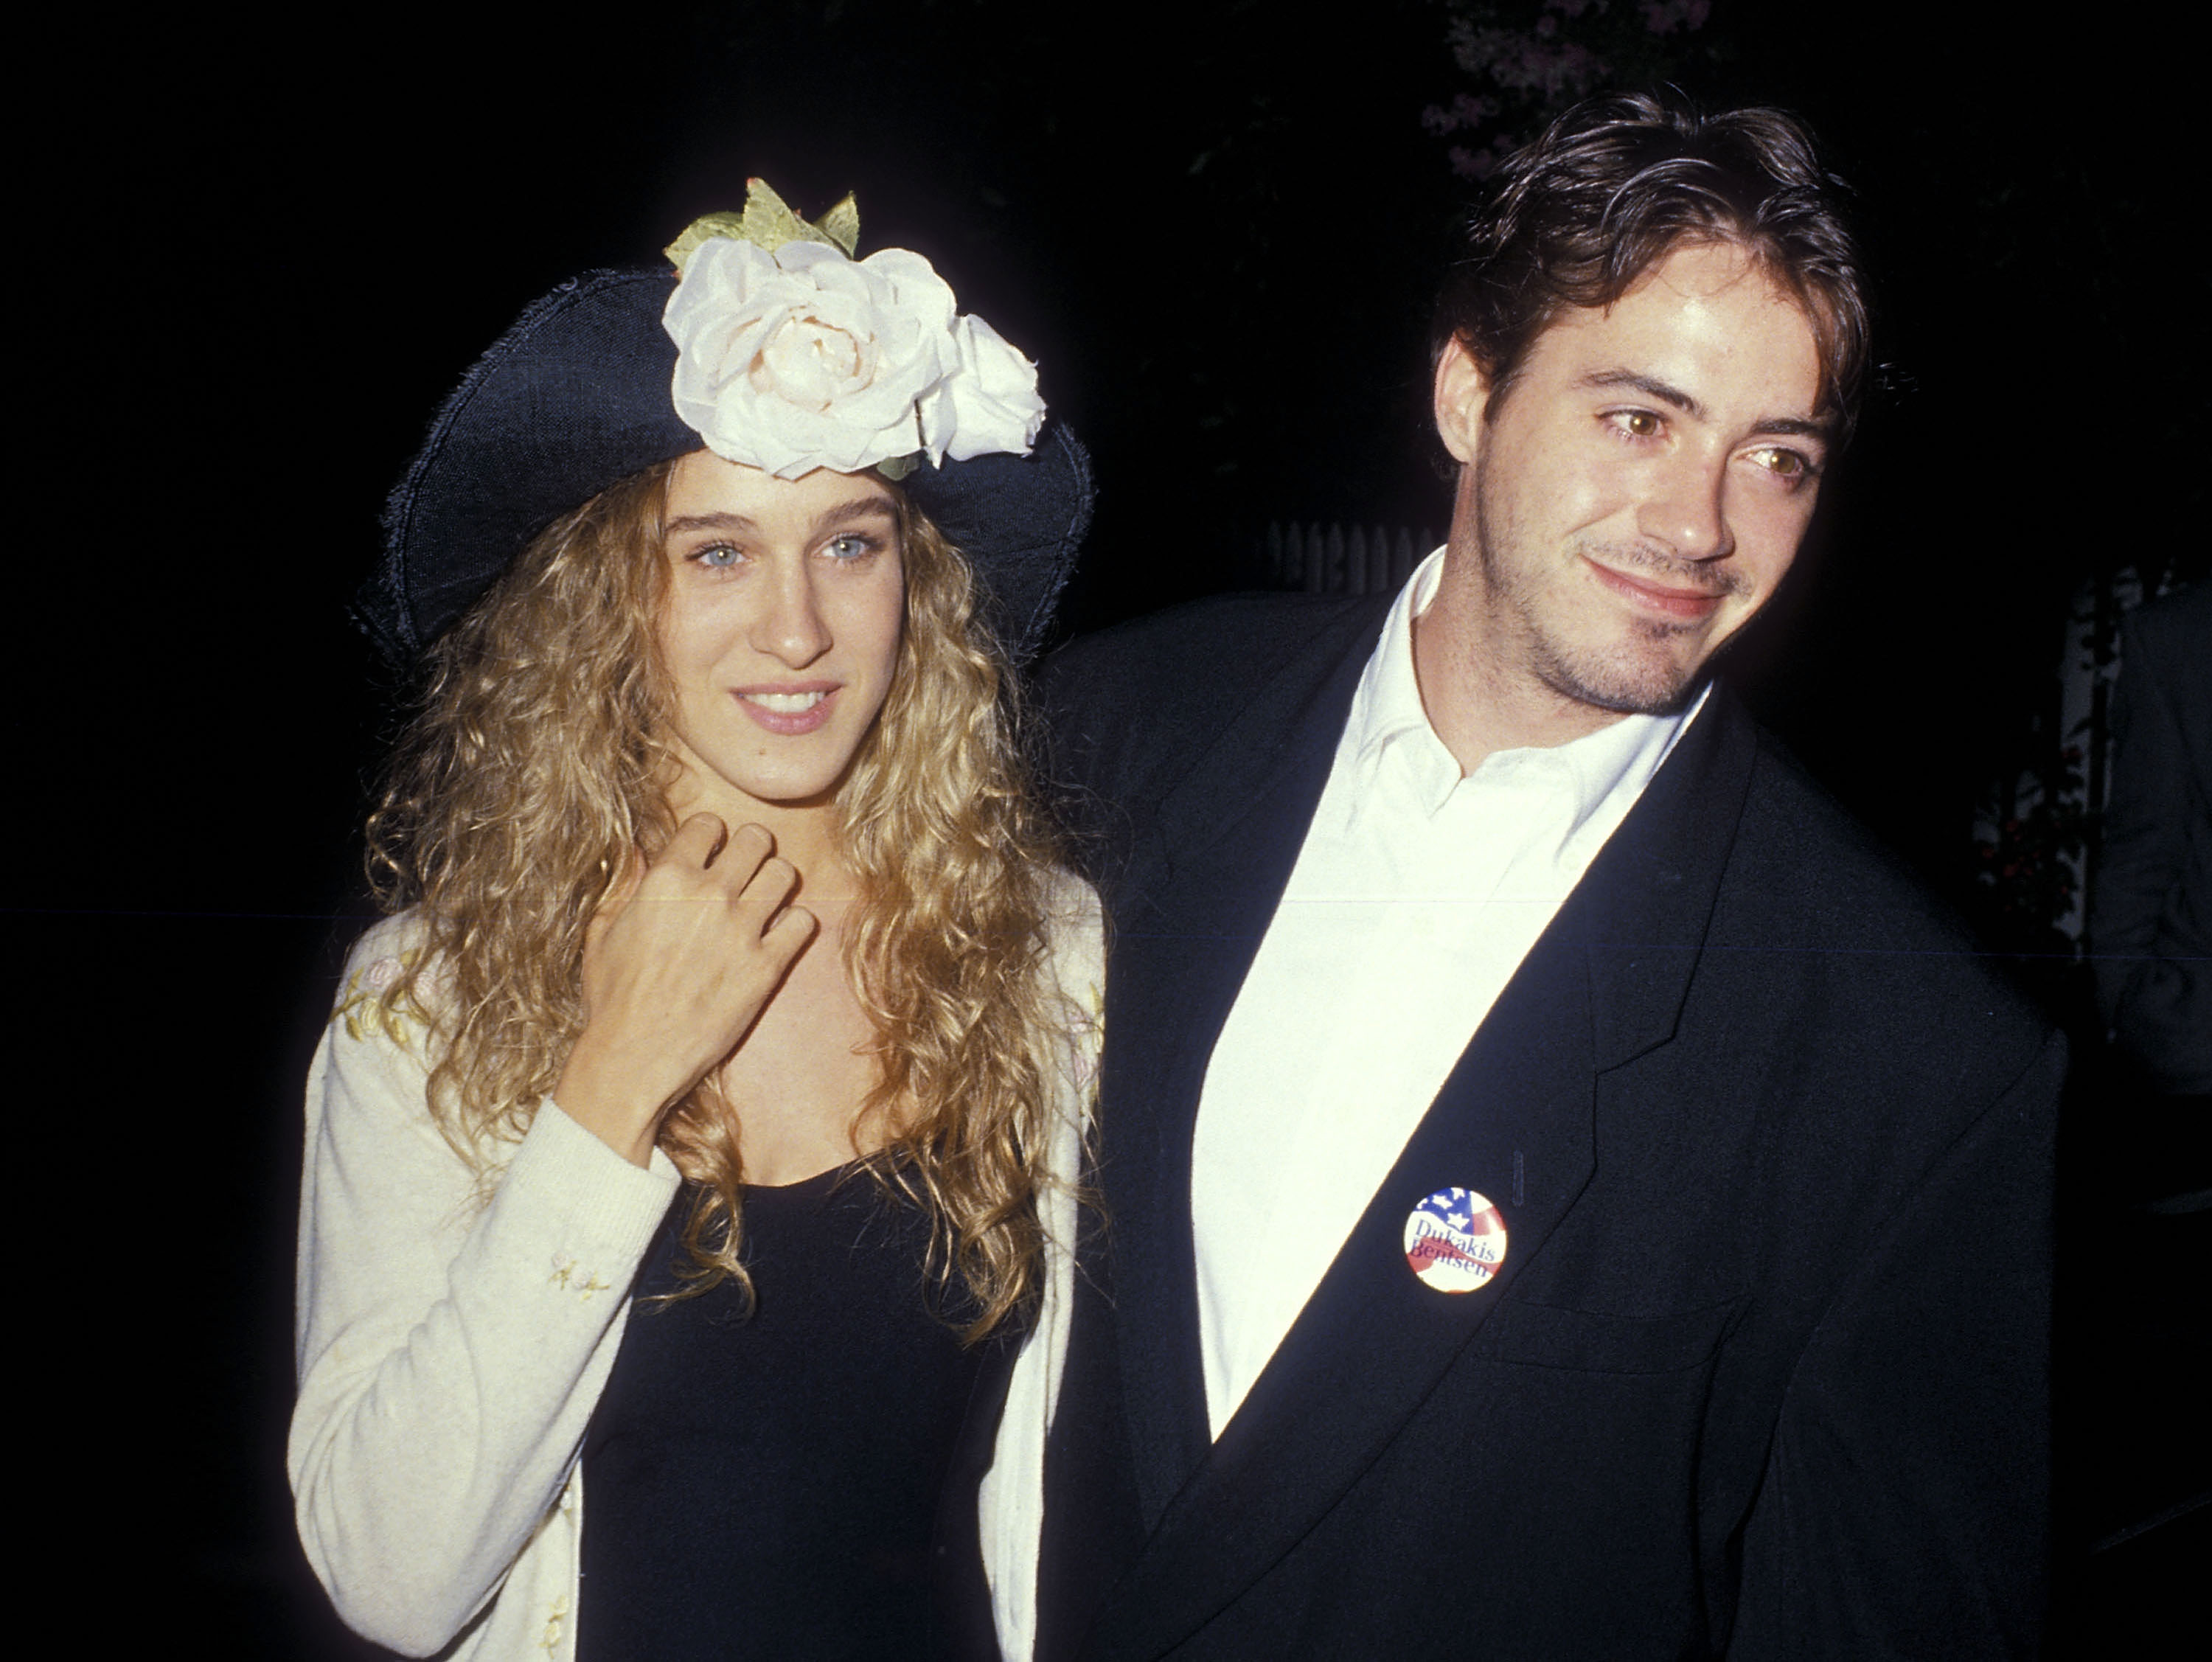 Actress Sarah Jessica Parker and actor Robert Downey, Jr. in 1988